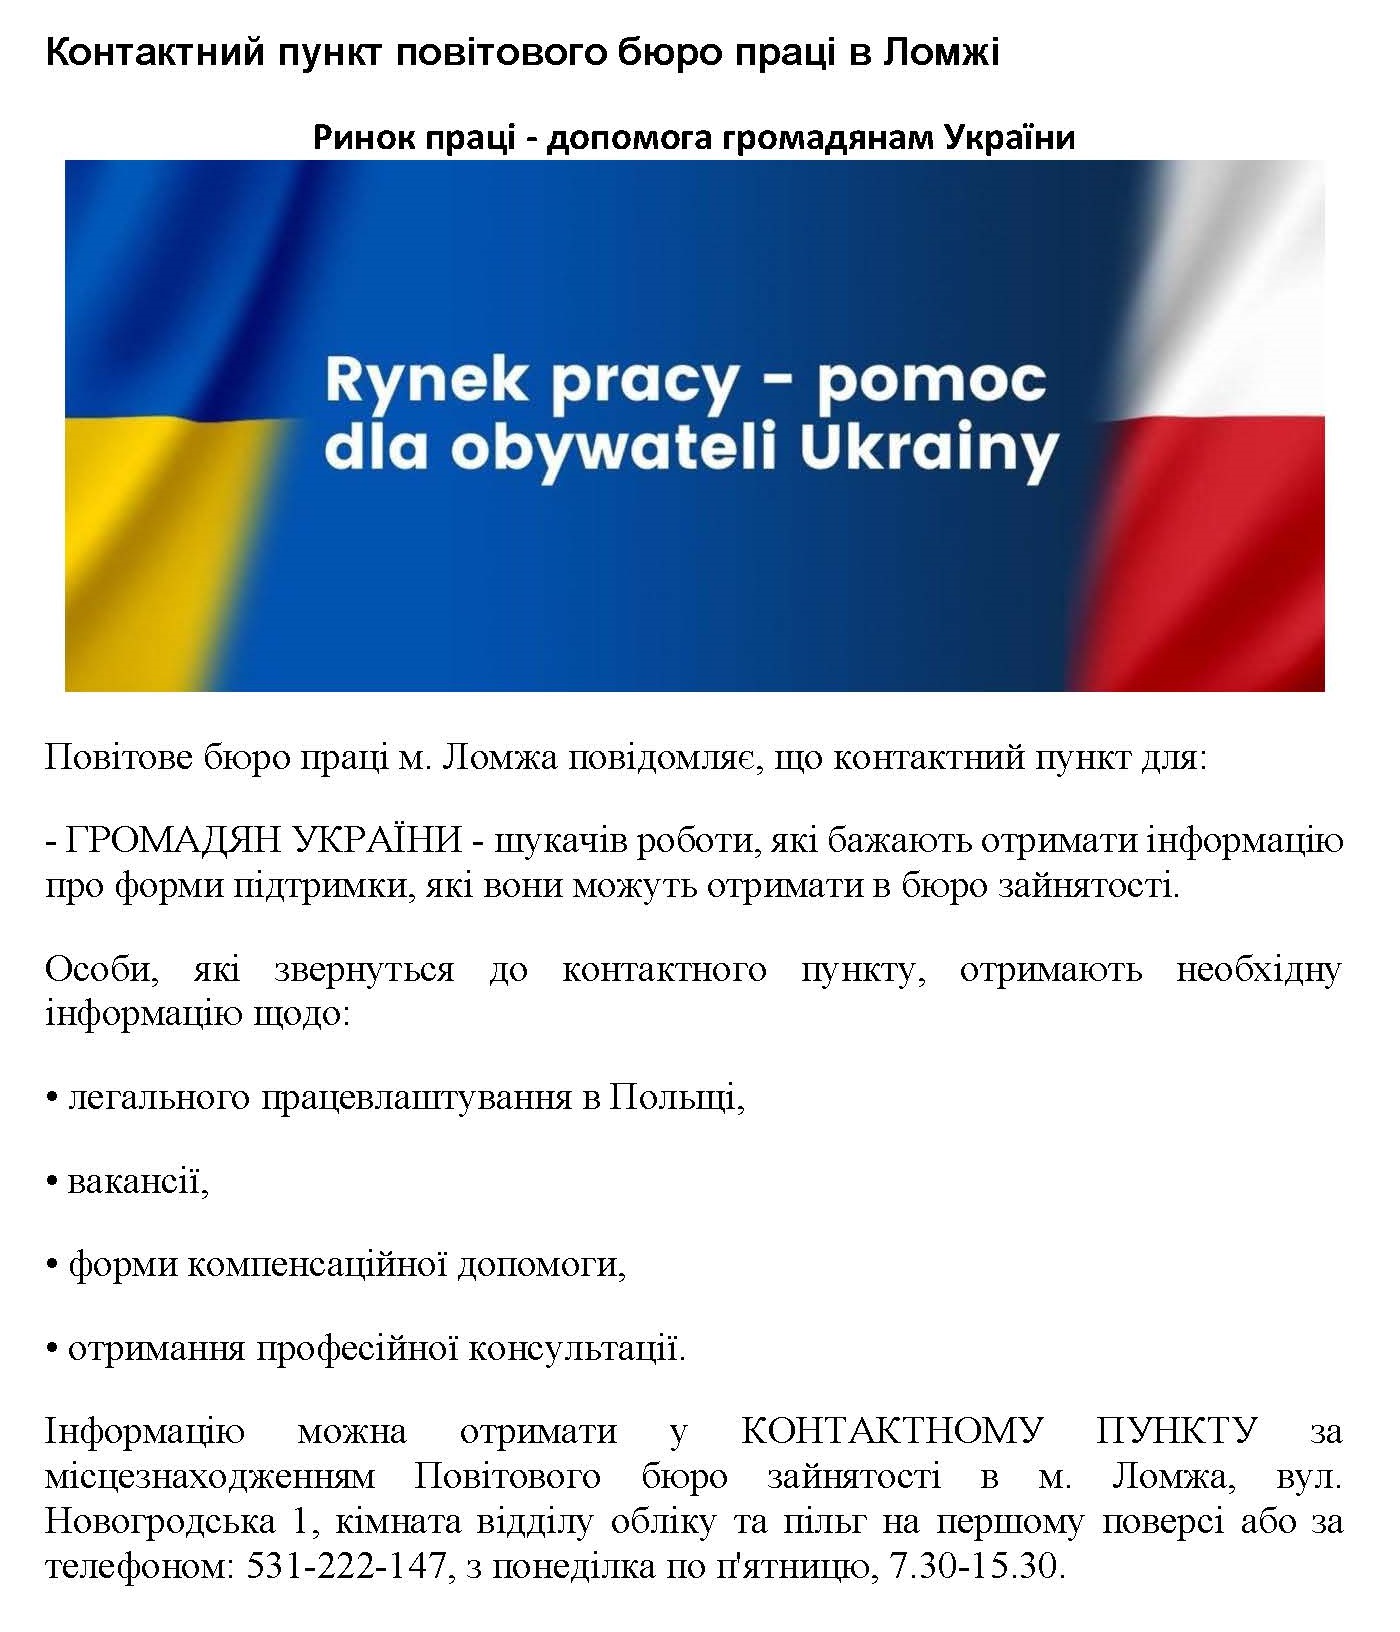 Punkt informacyjny dla mieszkańców Ukrainy